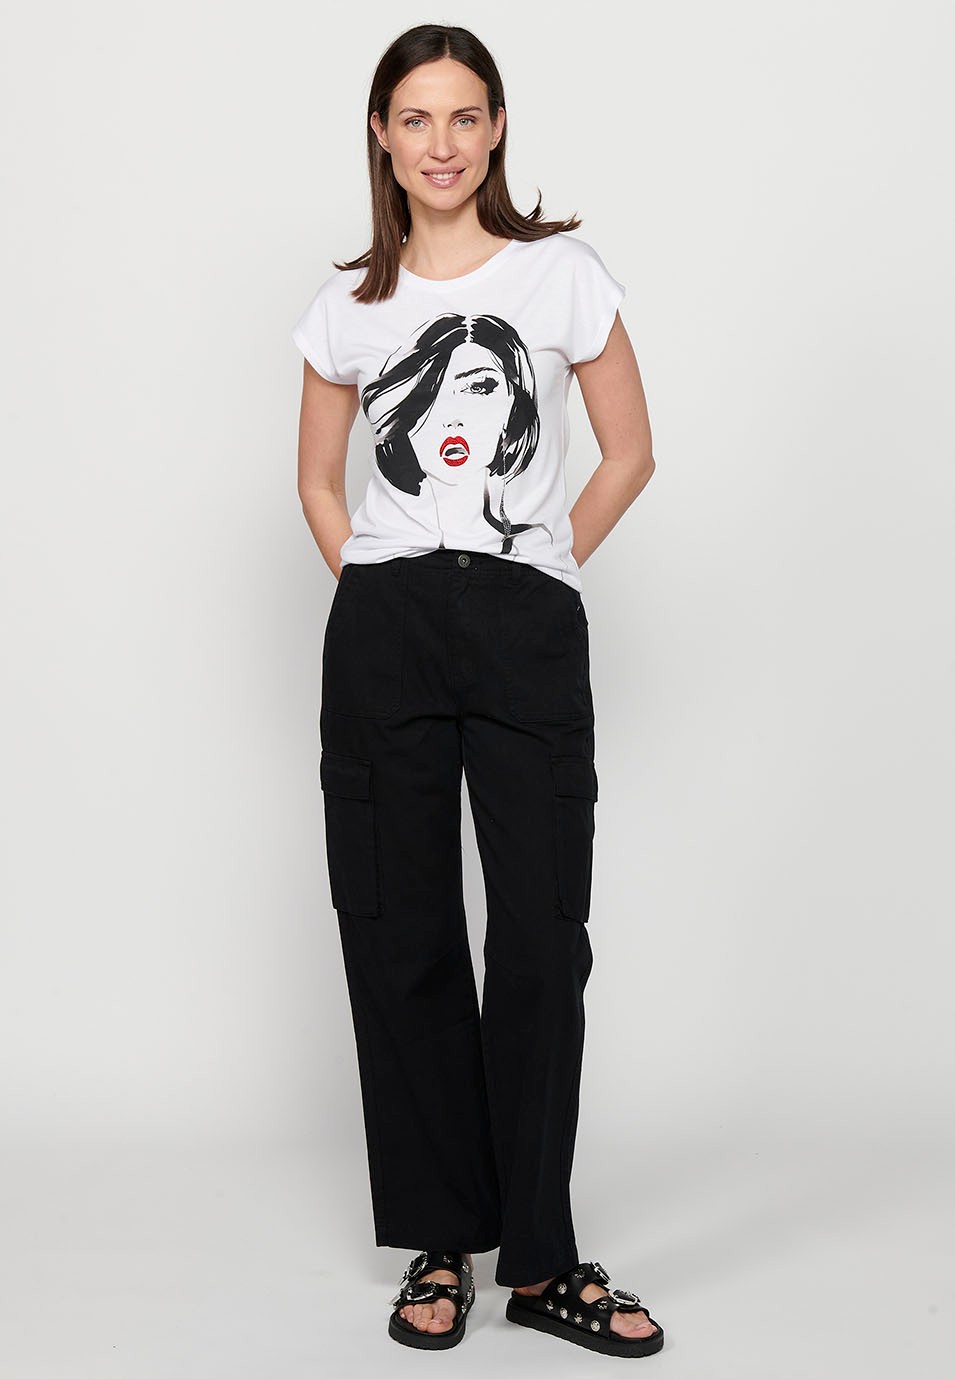 Camiseta de manga corta de algodón con Cuello redondo y Estampado delantero color Blanco para Mujer